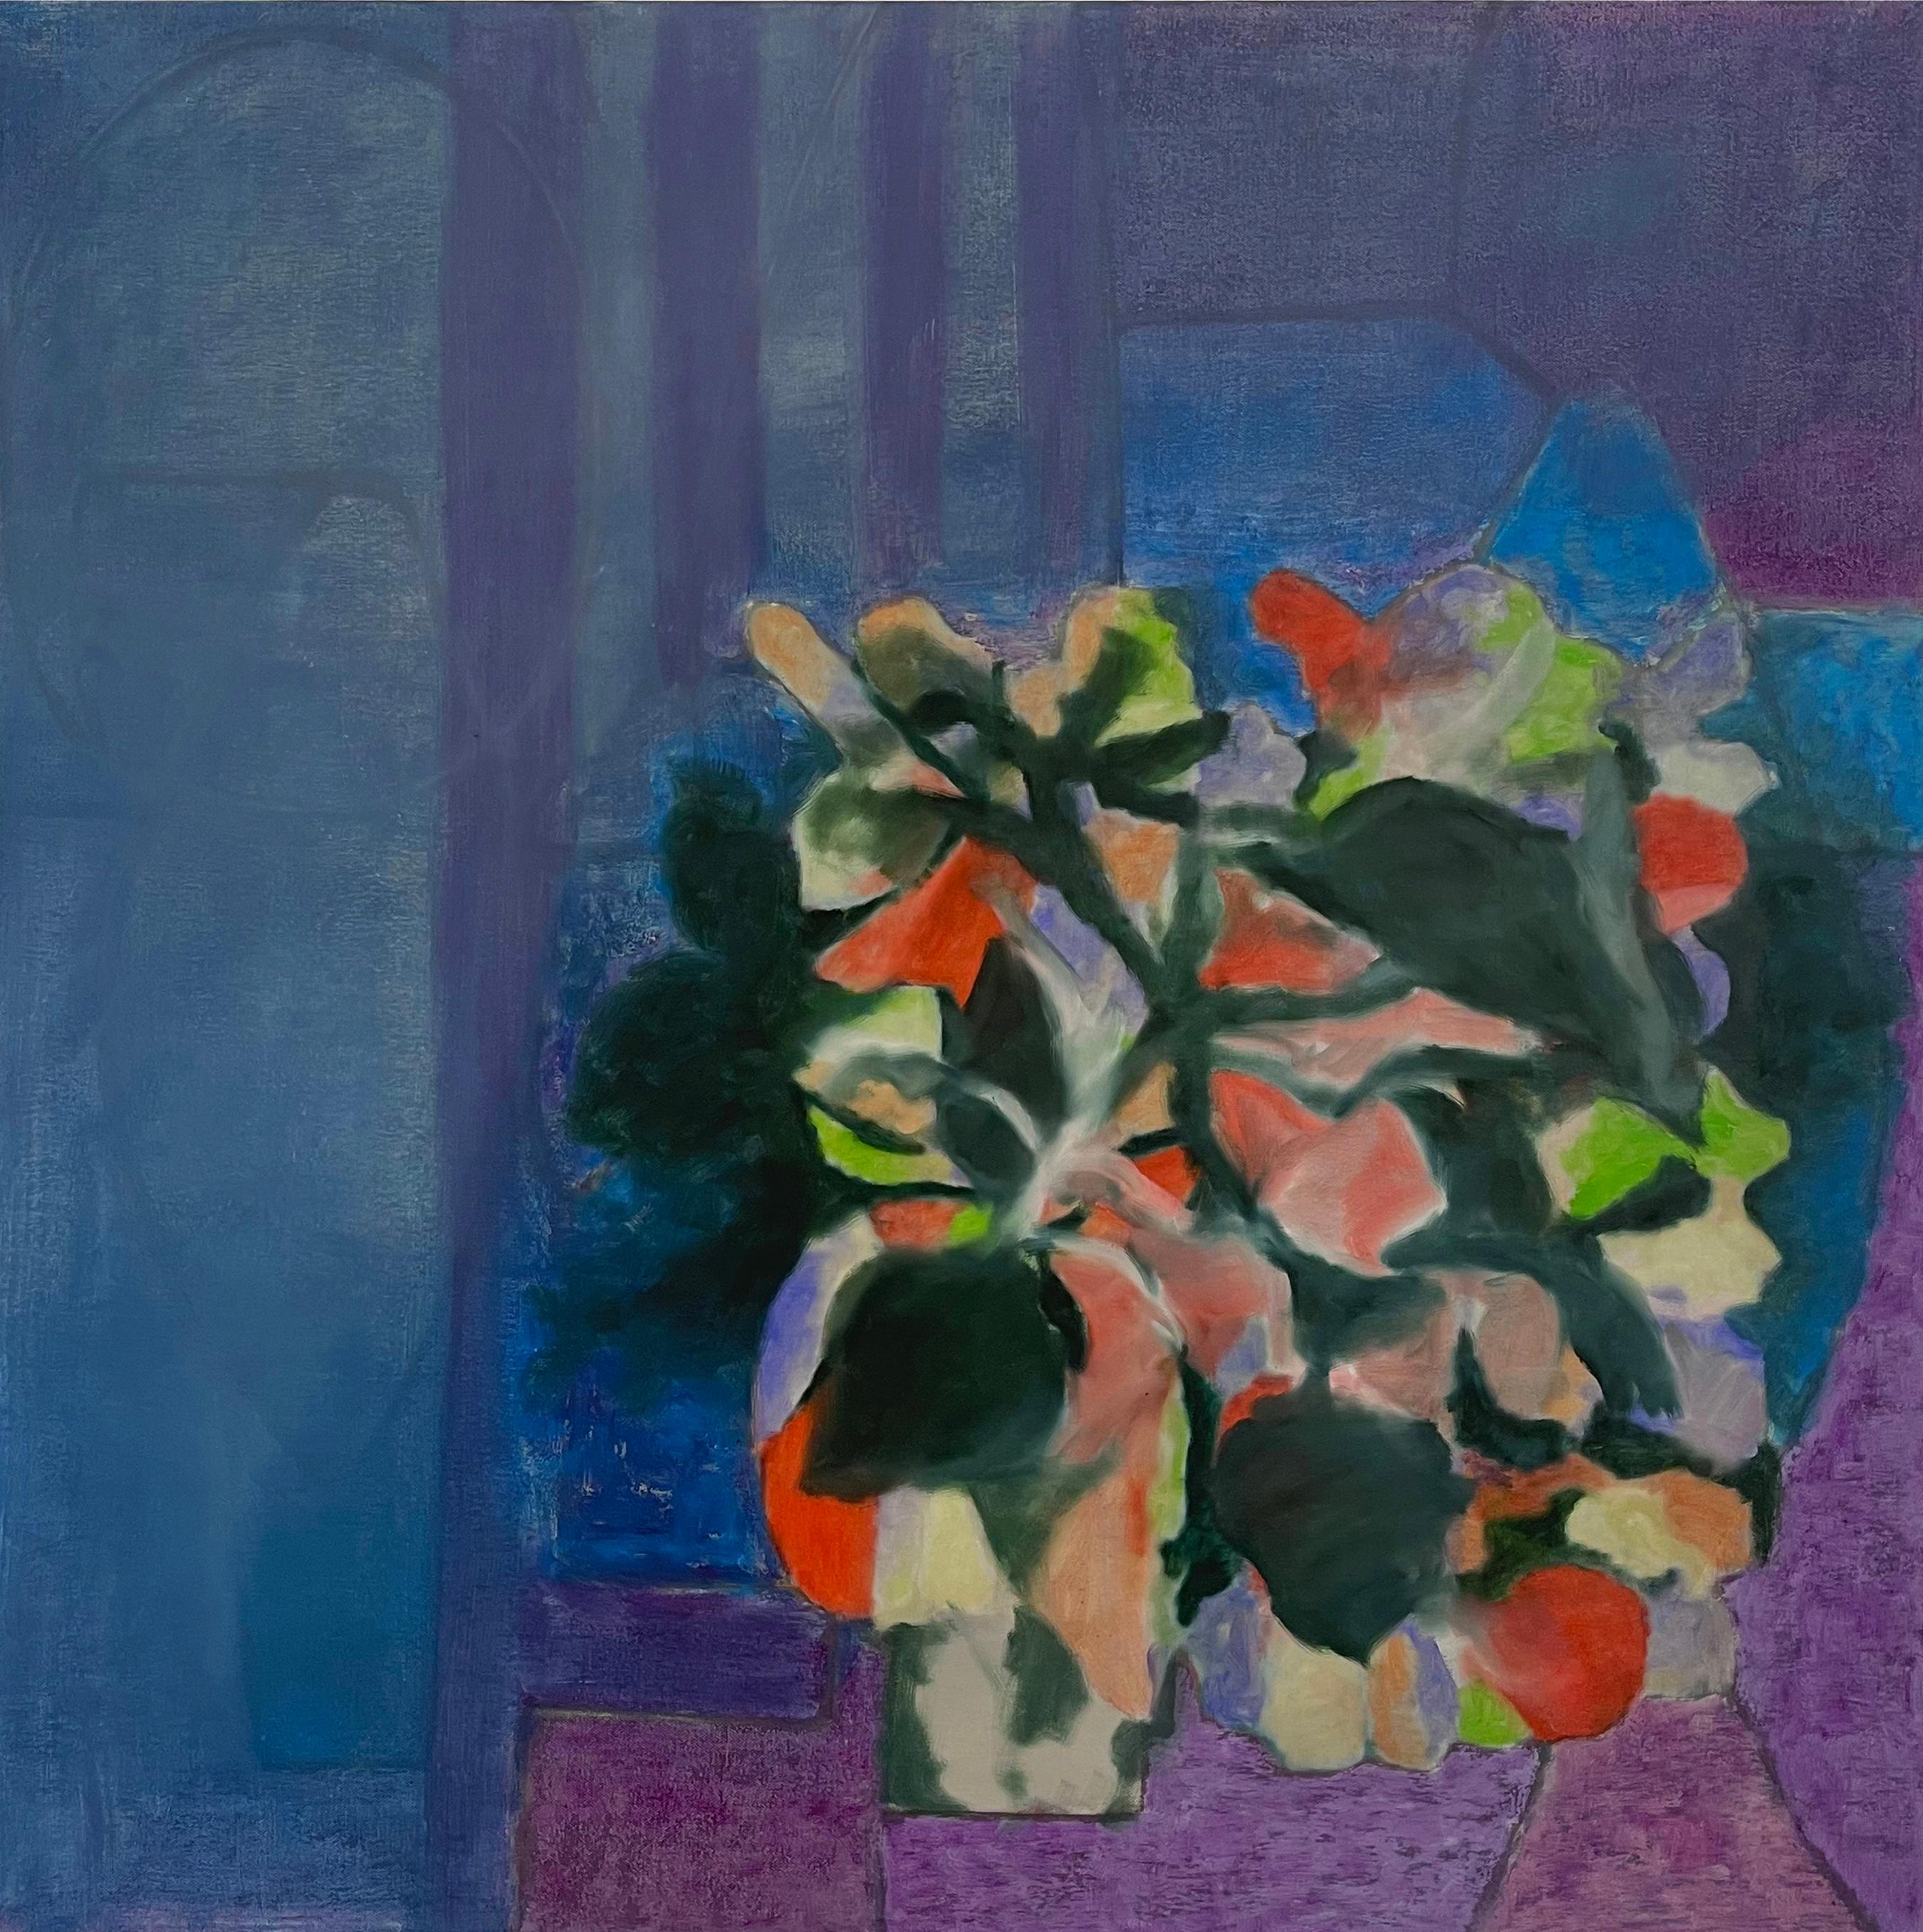 Abstract Painting Carrie Johnson - Nature morte - Peinture à l'huile sur toile abstraite à motifs floraux géométriques contemporains